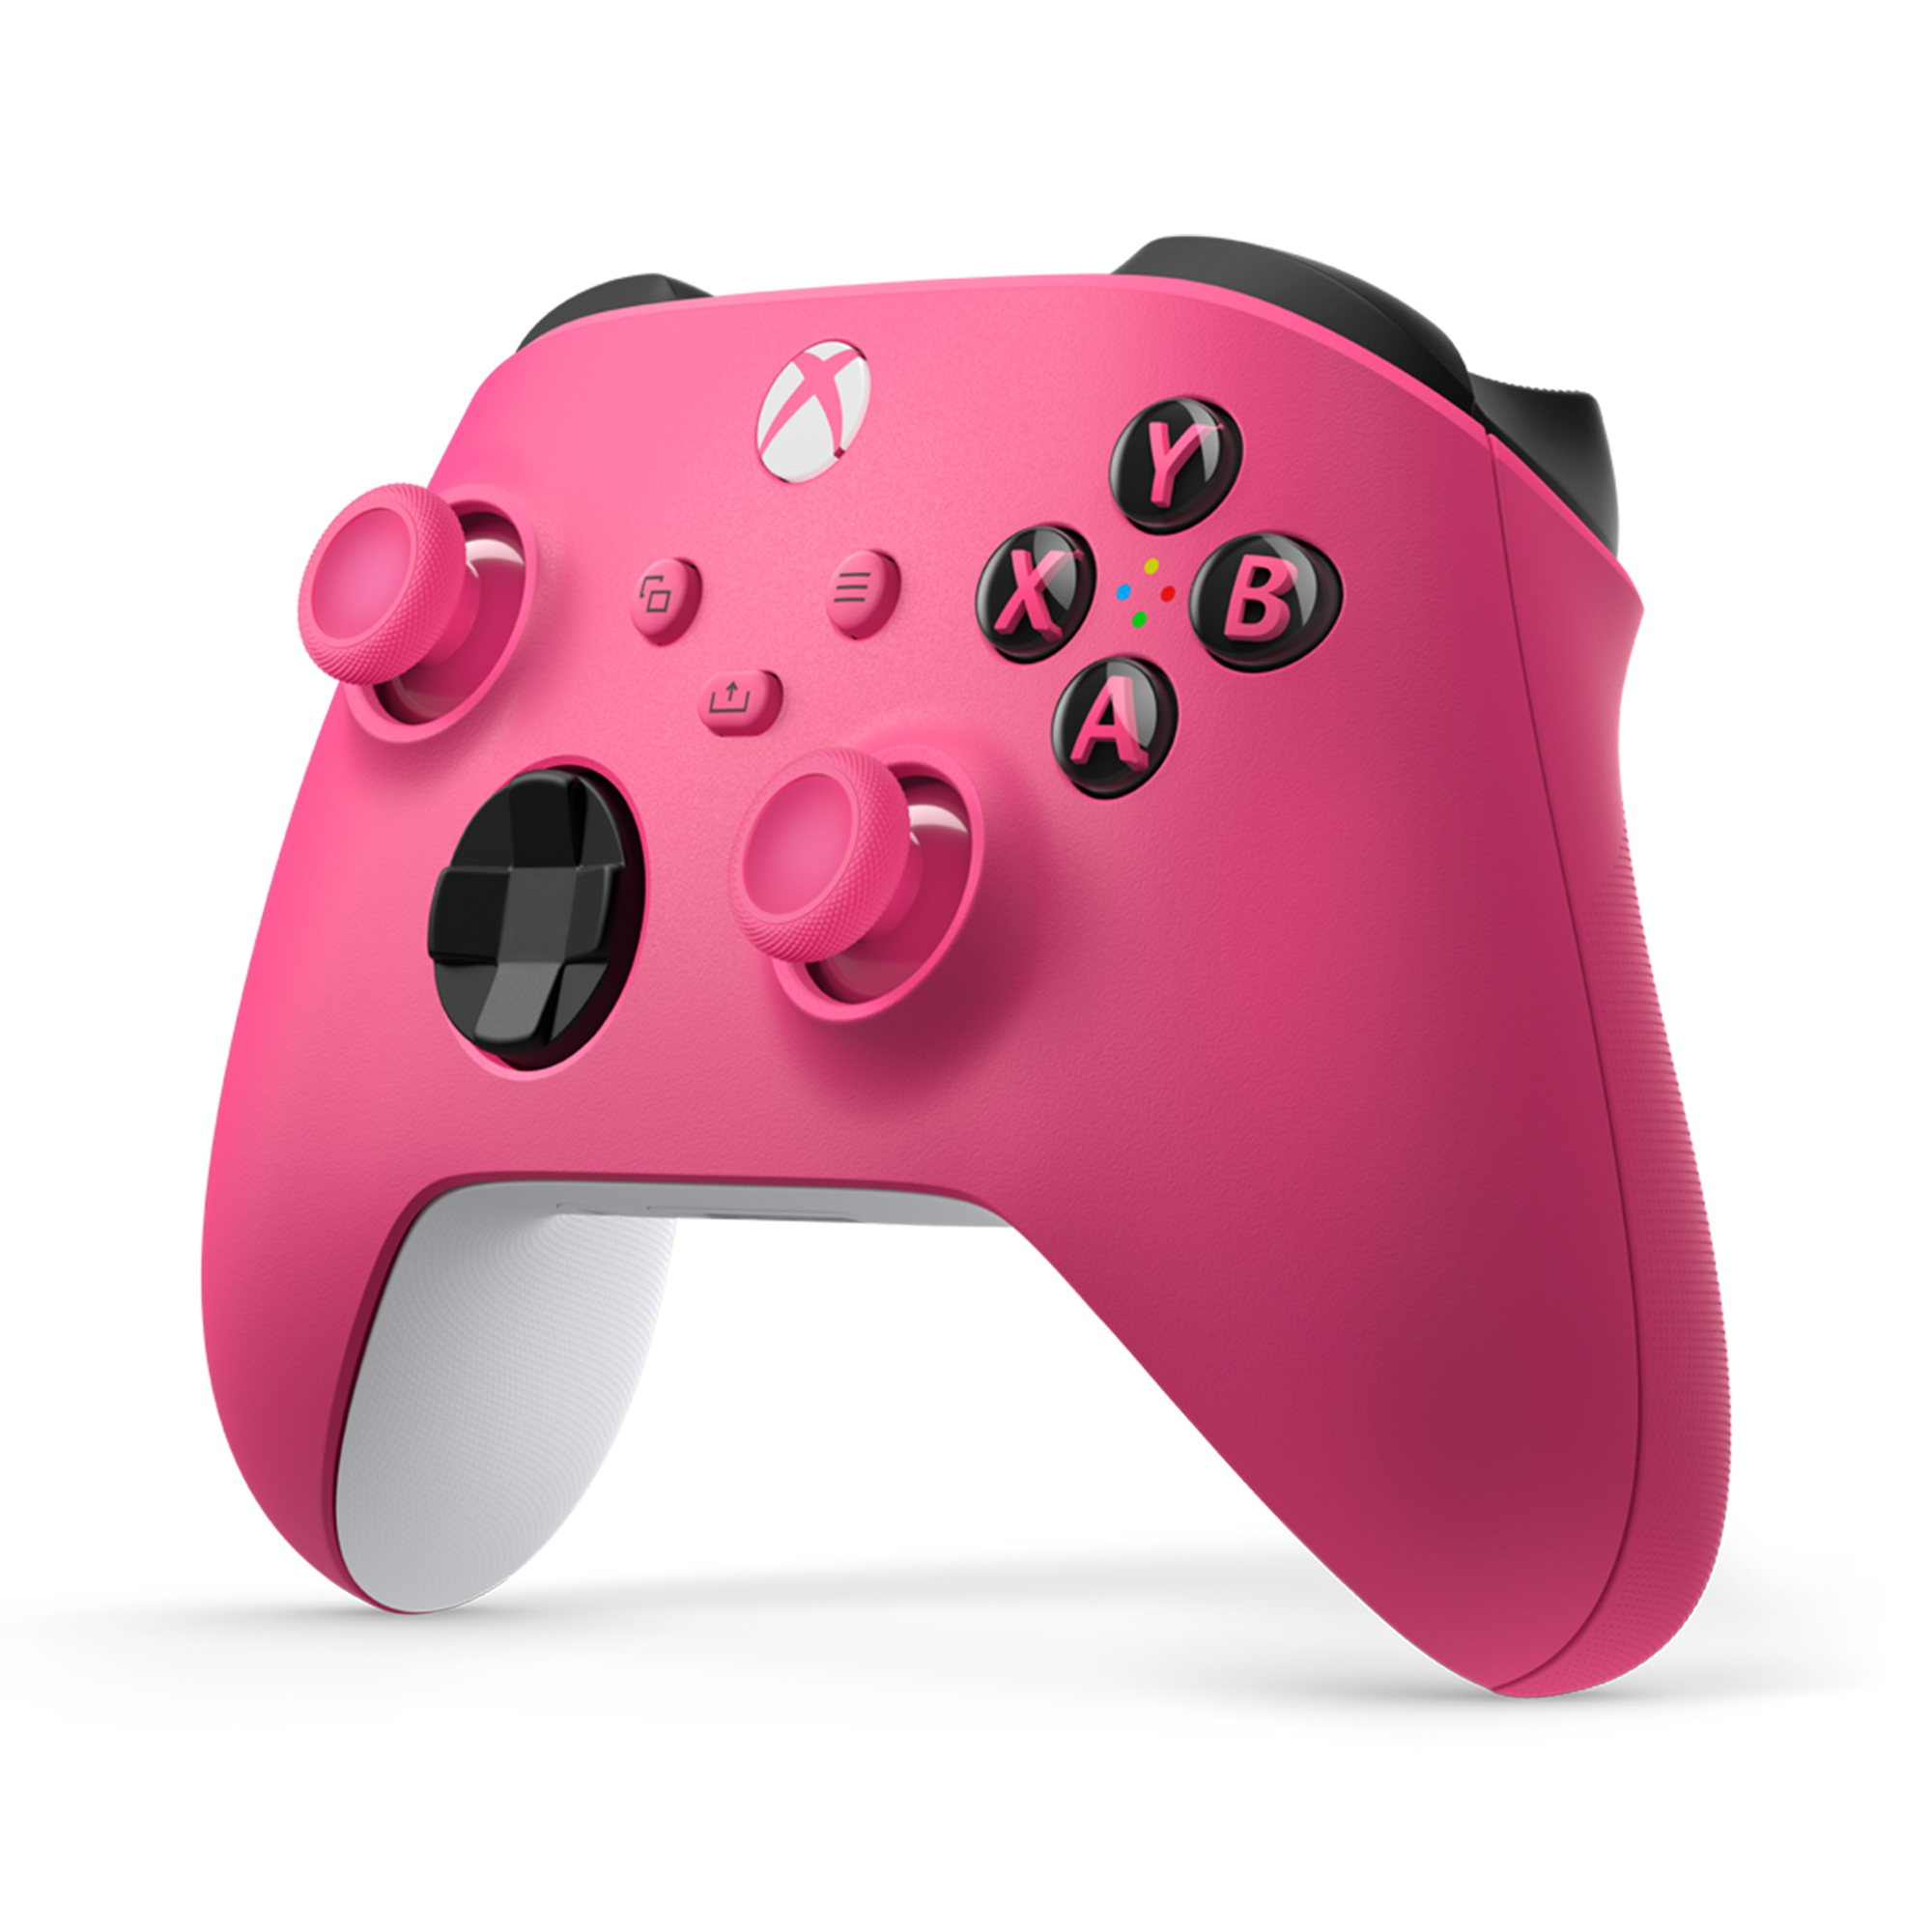 Obrázek XSX - Bezdrátový ovladač Xbox Series, růžový